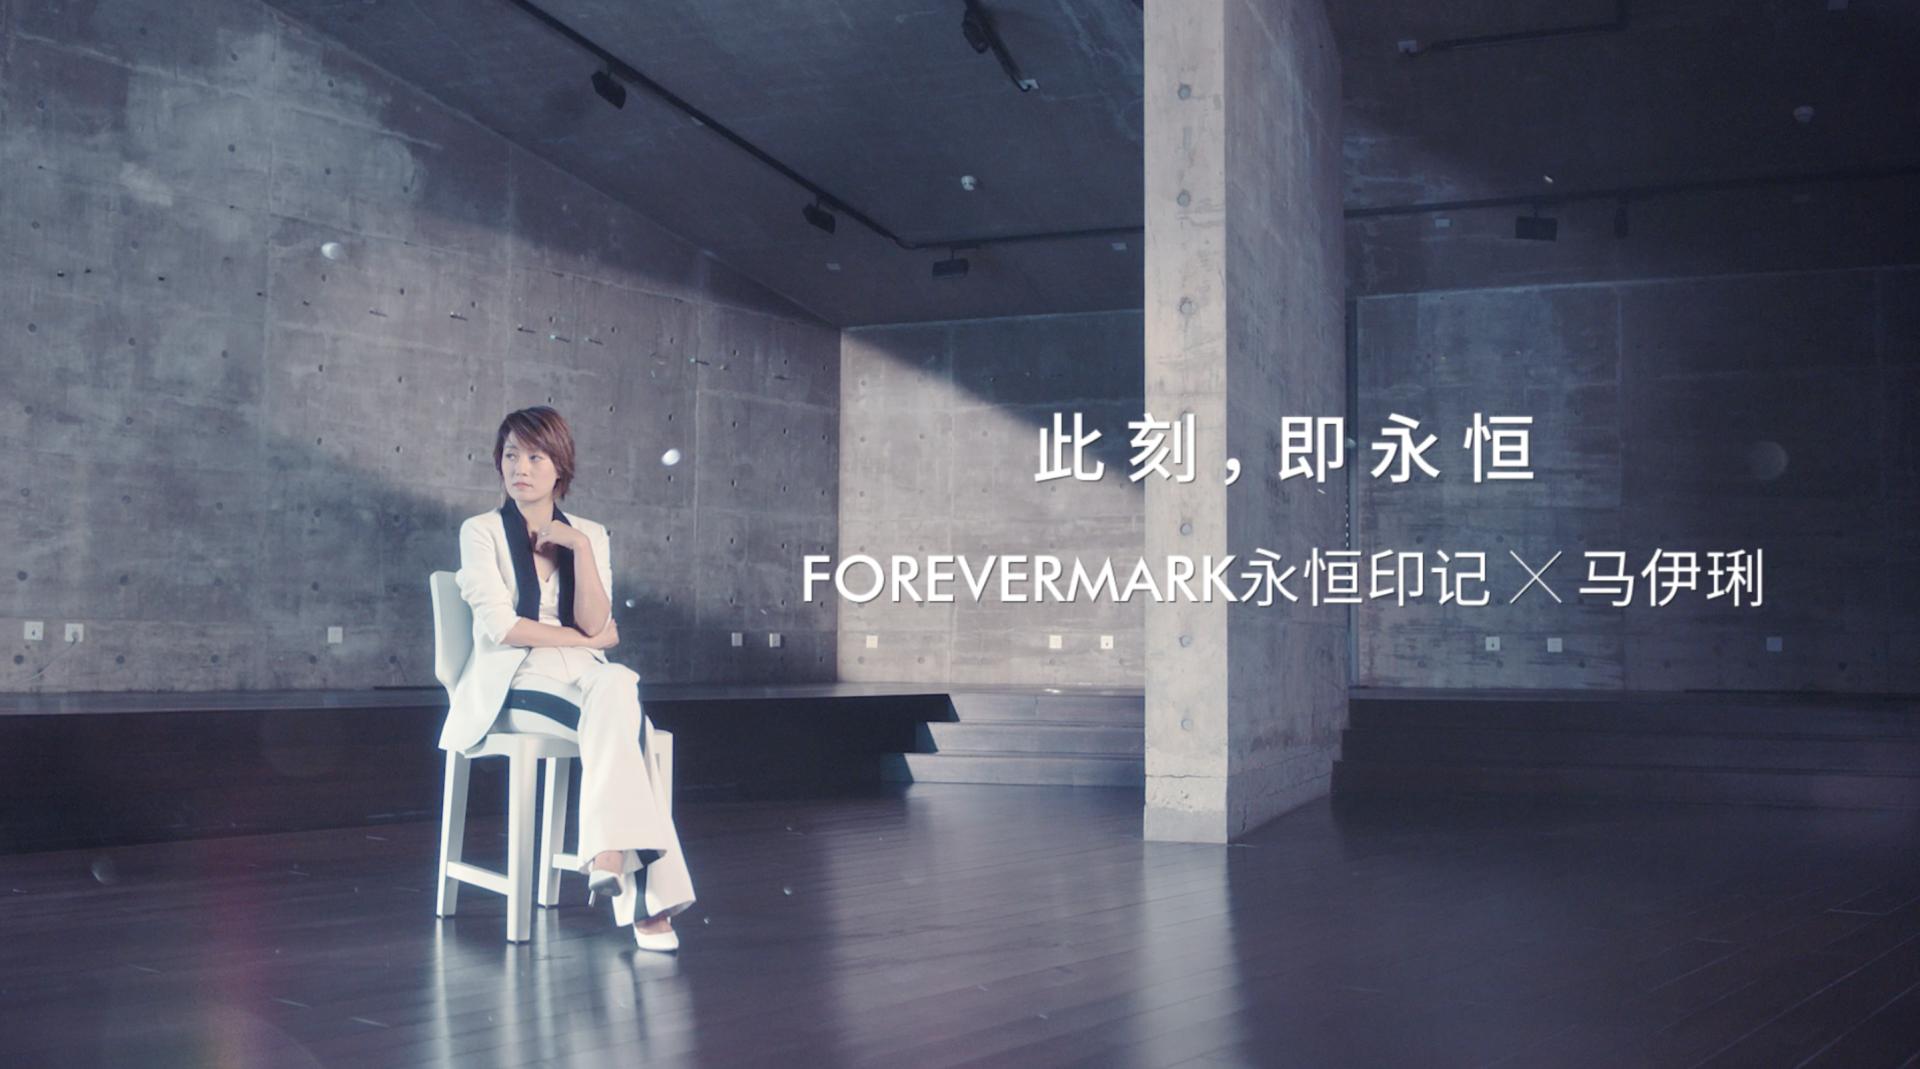 CF | #Forevermark永恒印记X马伊琍#